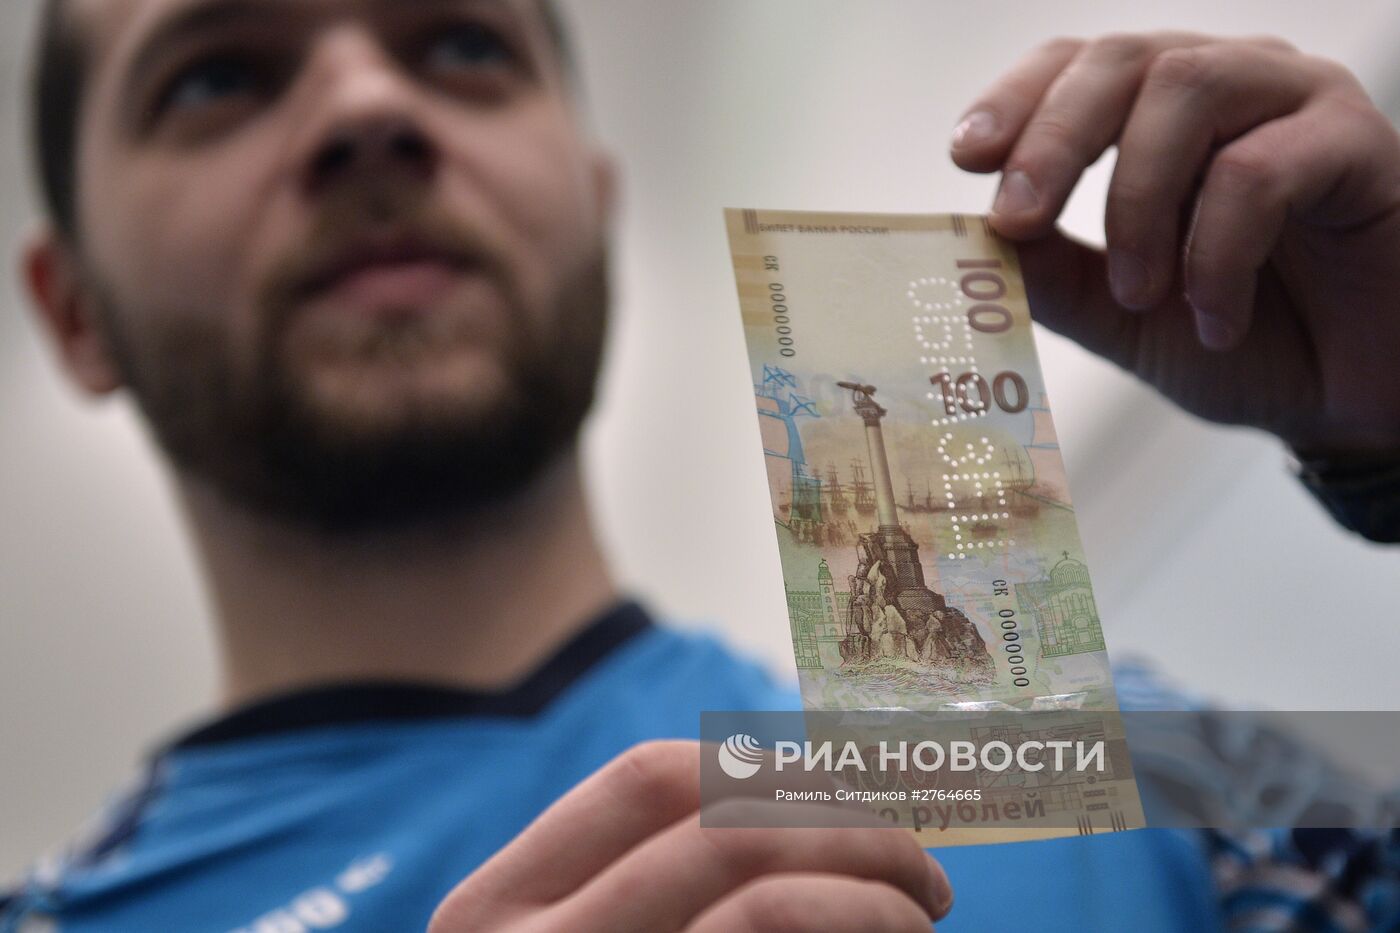 Банк России выпустил банкноту номиналом 100 рублей, посвященную Крыму и Севастополю